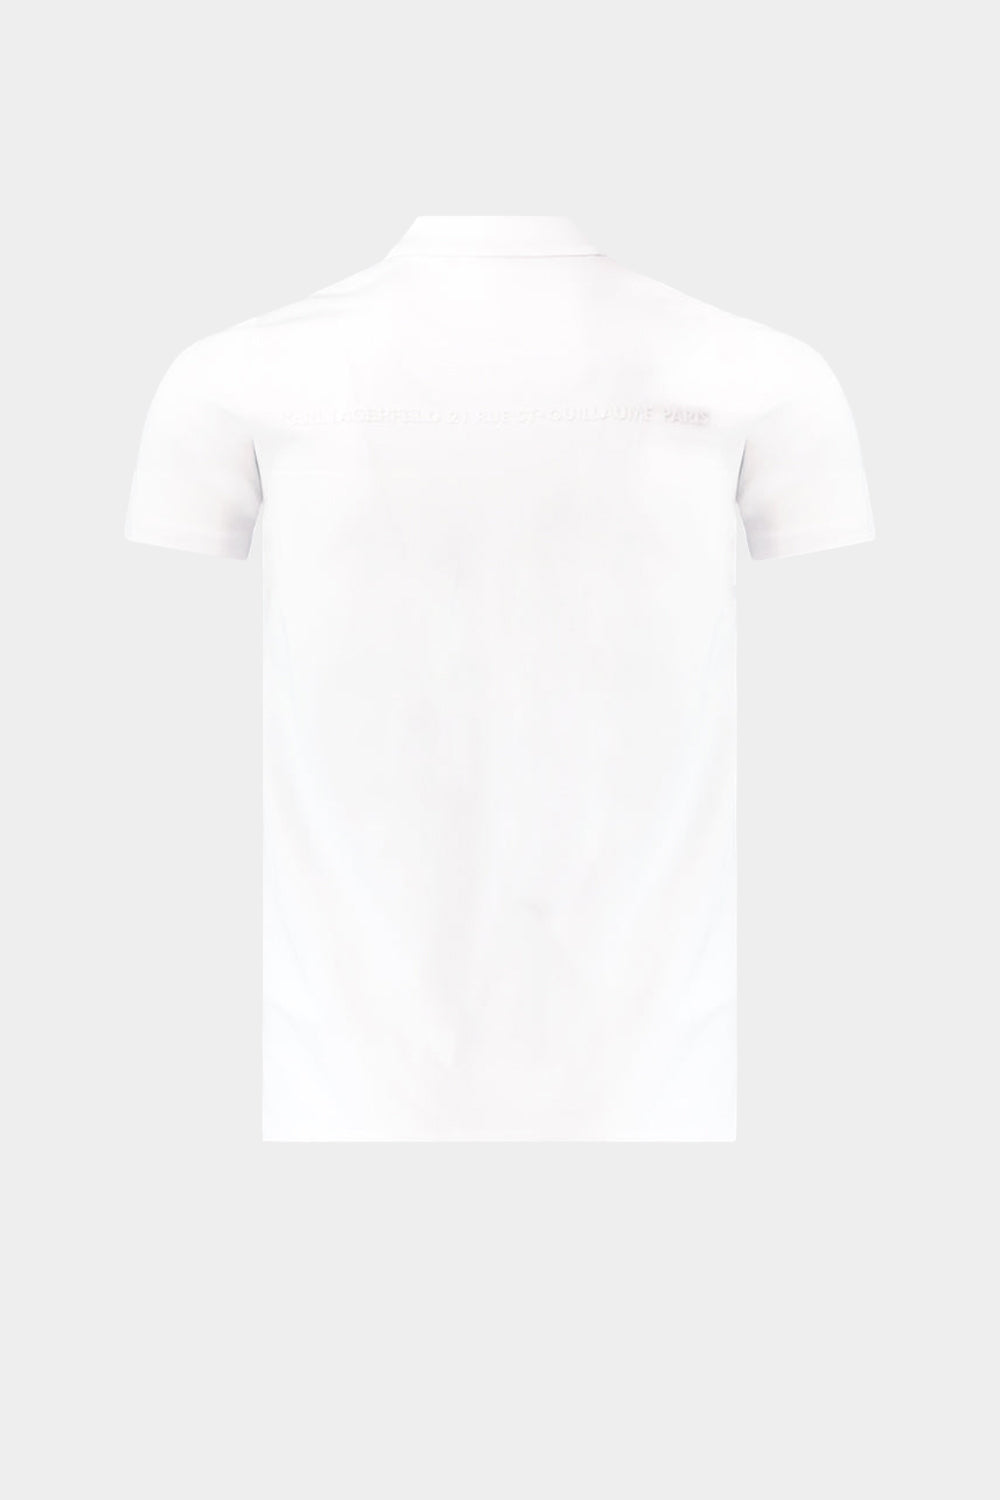 חולצת פולו לגברים IKONIK KARL KARL LAGERFELD Vendome online | ונדום .